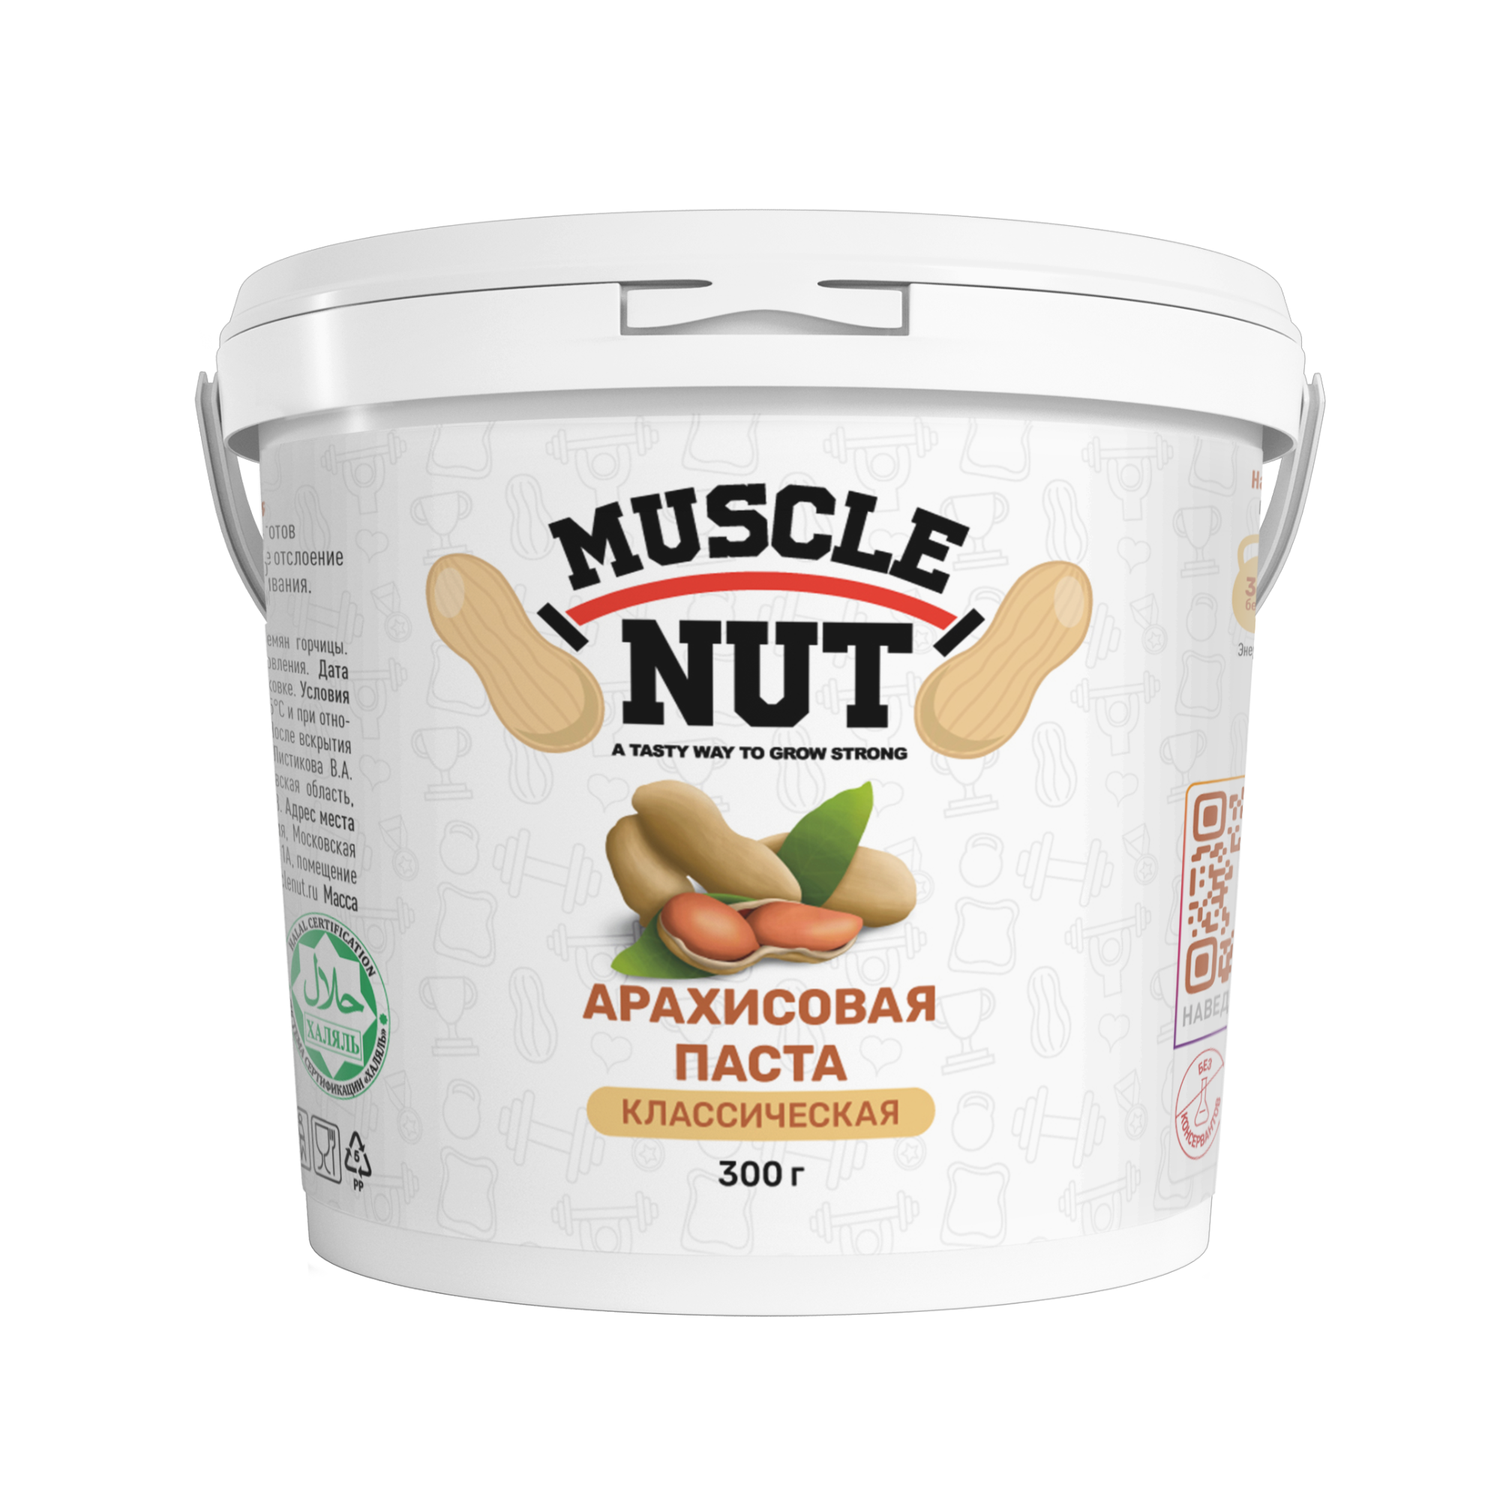 Арахисовая паста Muscle Nut классическая без сахара натуральная высокобелковая 300 г - фото 1